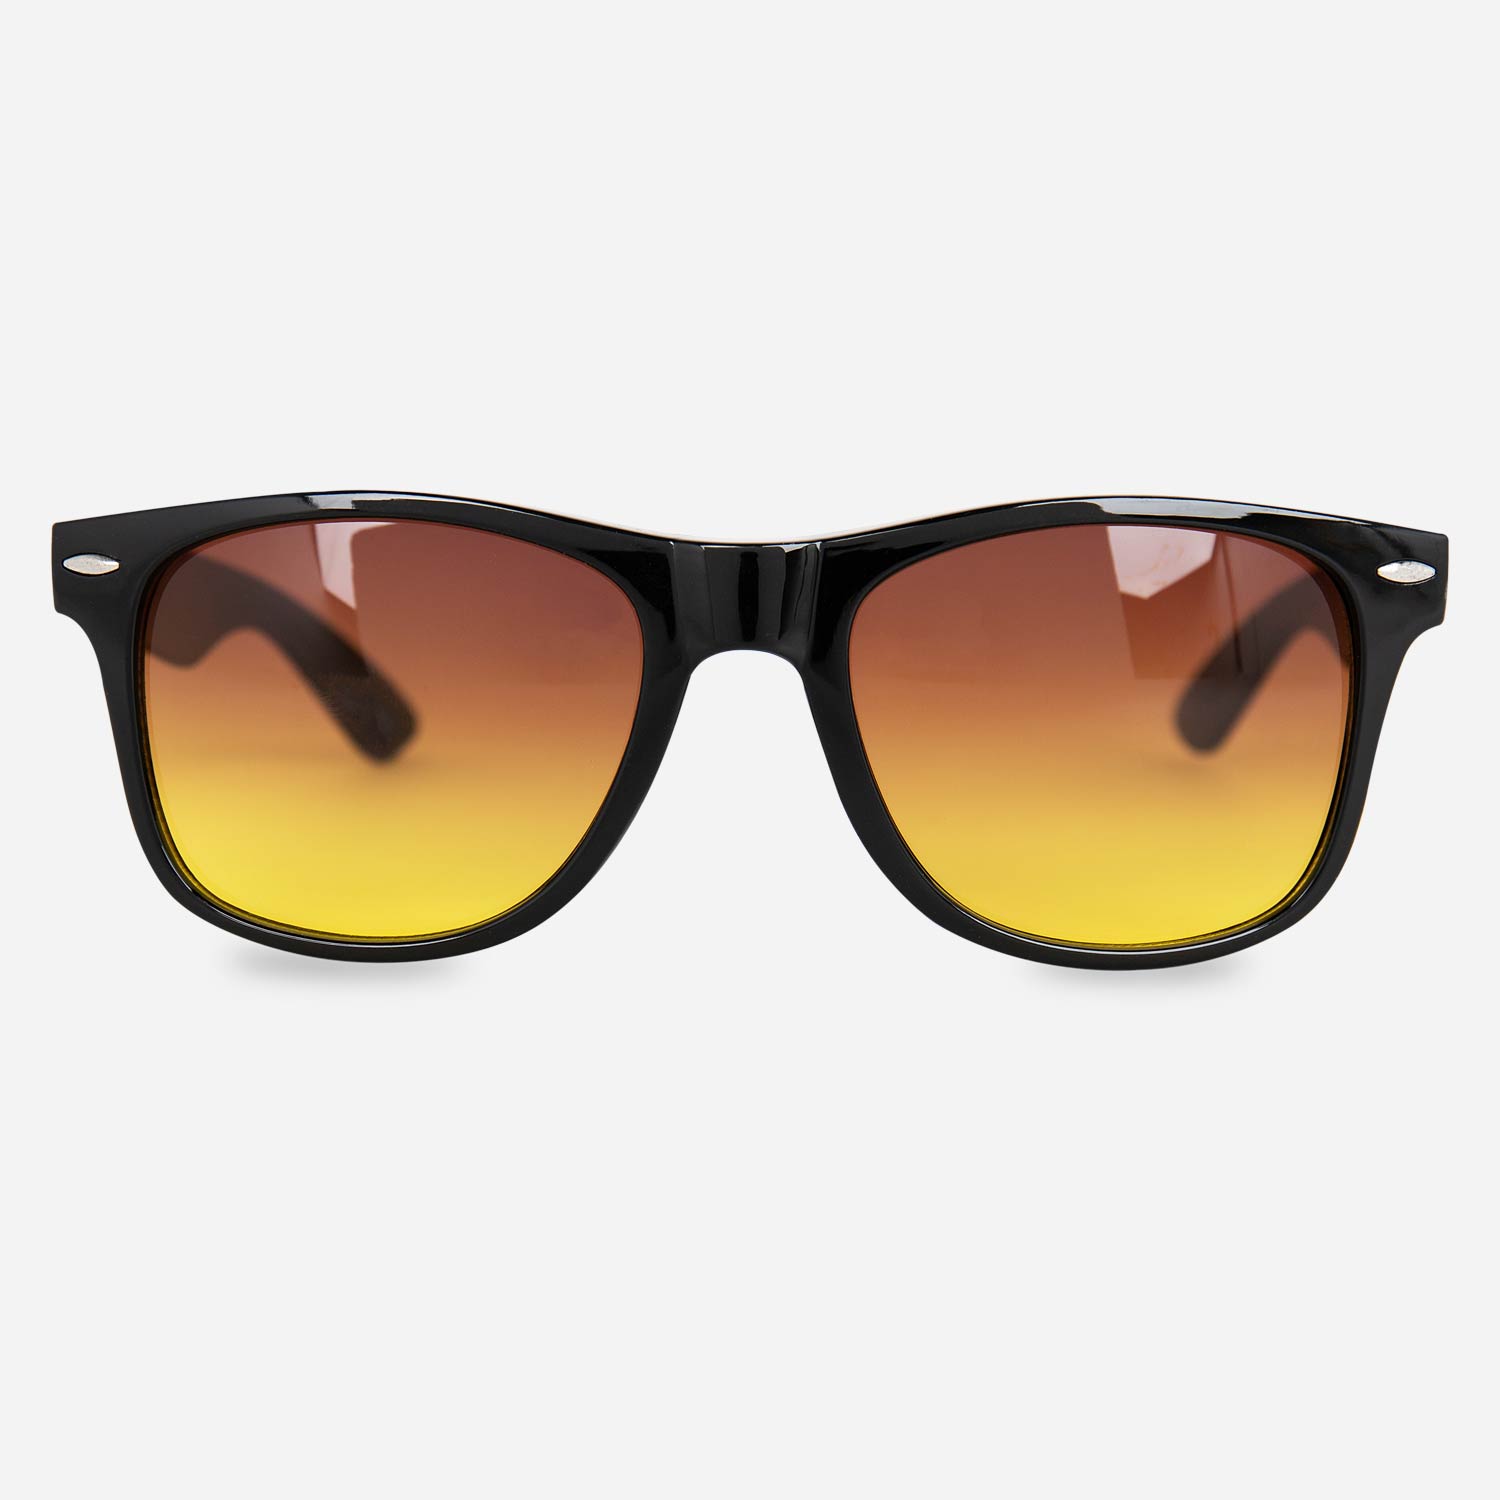 Versace Biggie Sunglasses: Get the Look - Pretavoir